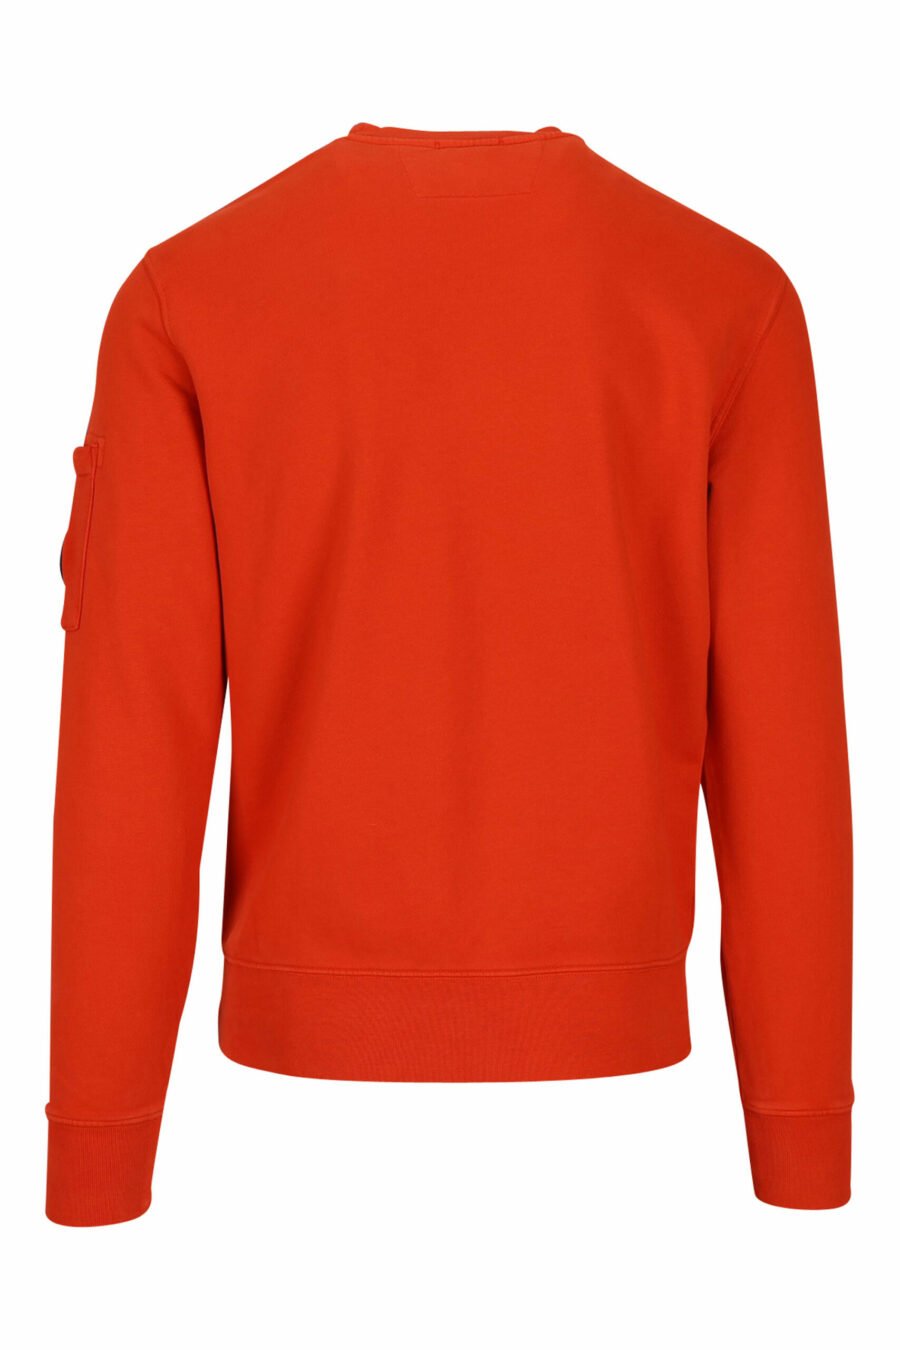 Orange sweatshirt with side lens logo - 7620943598254 2 scaled